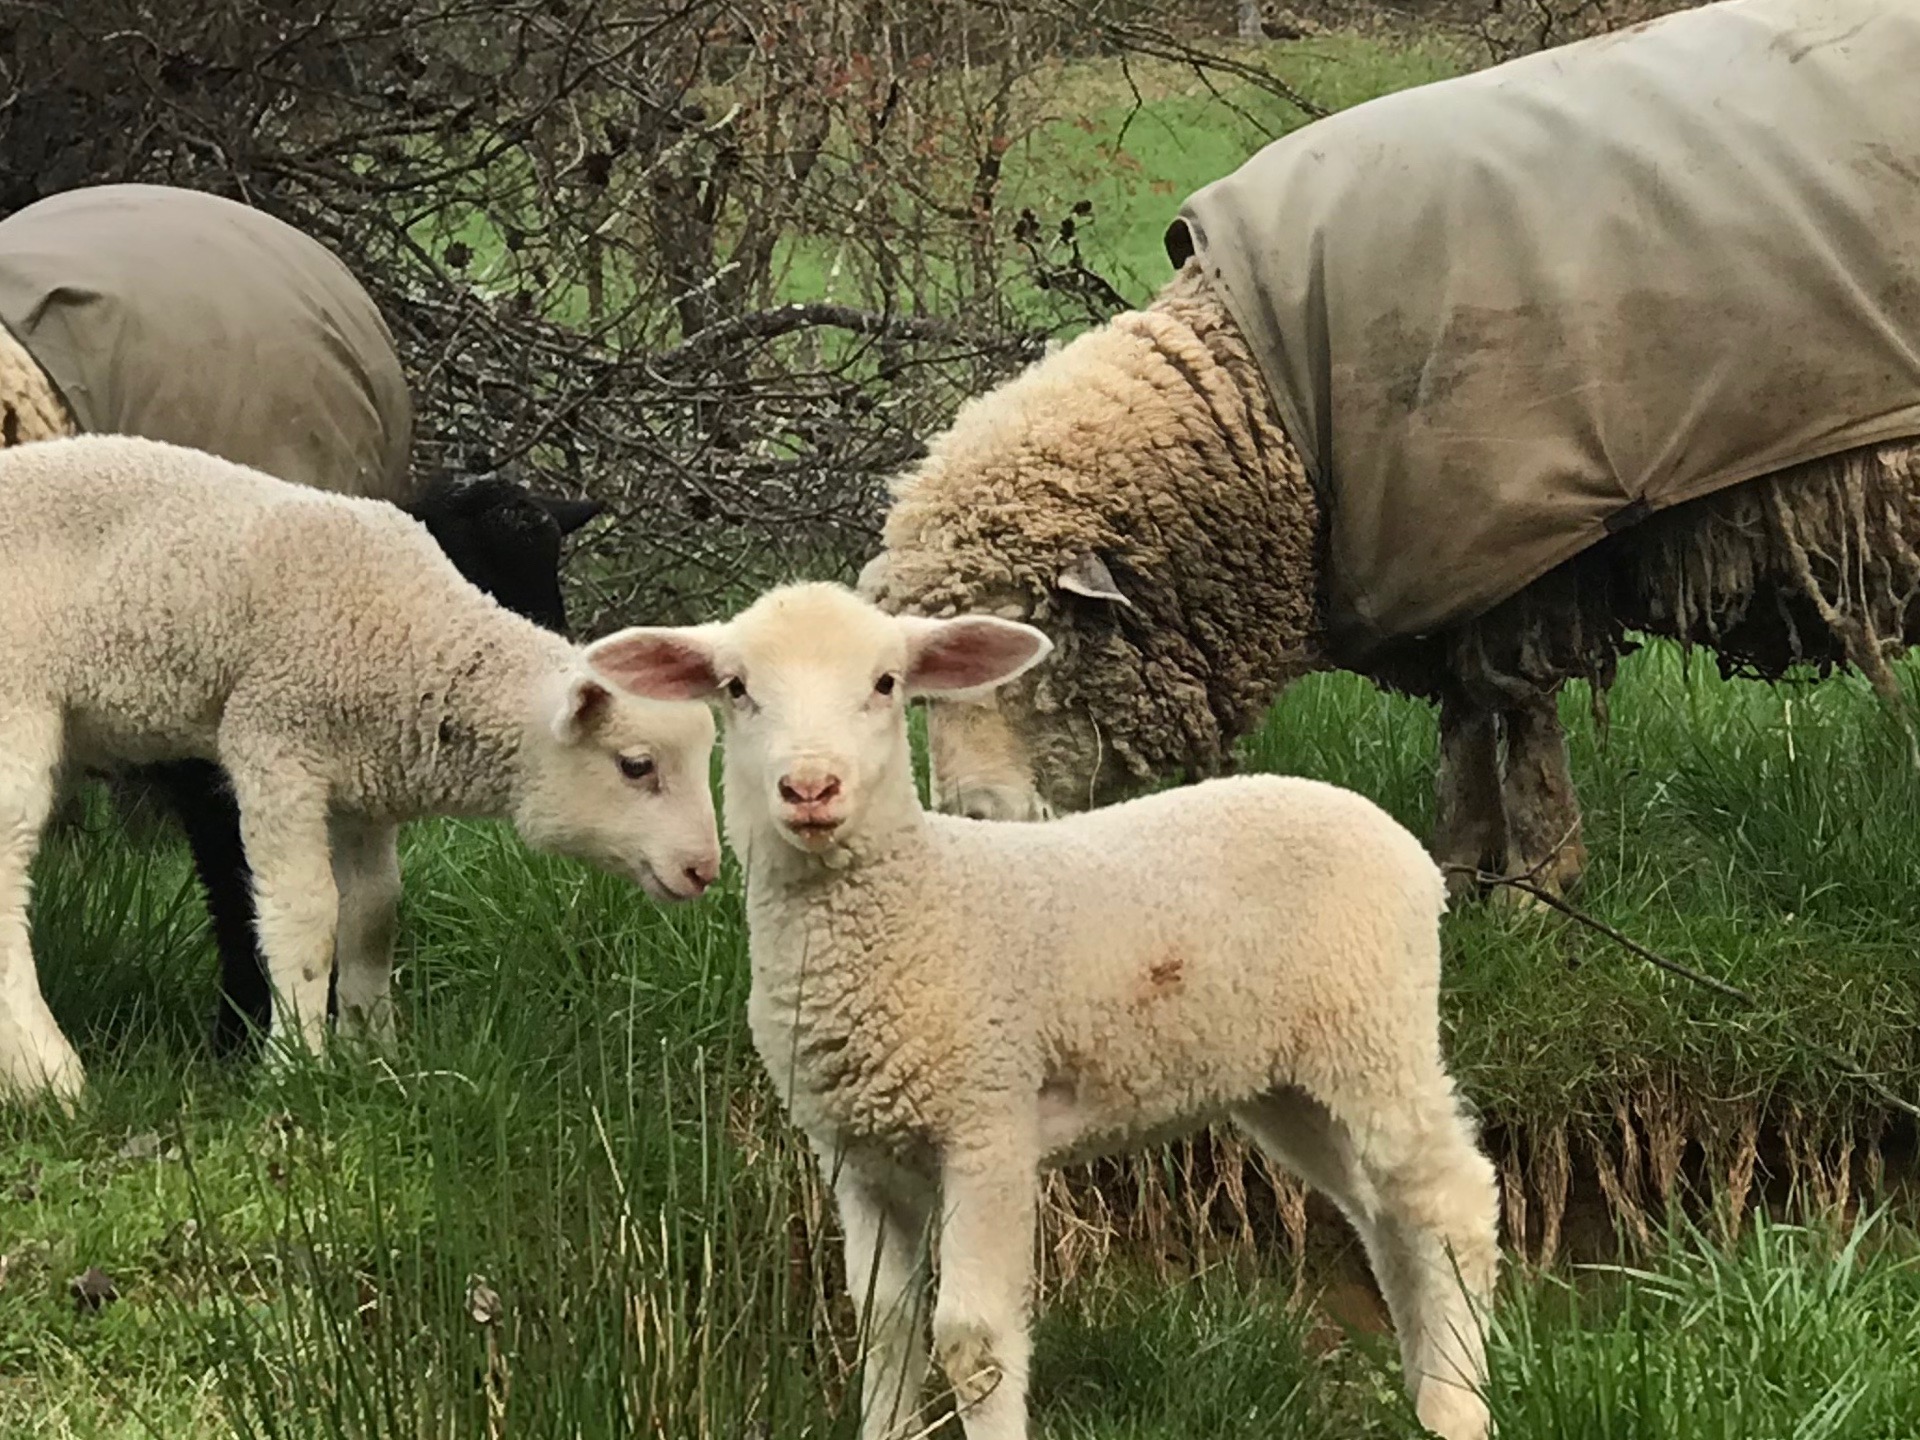 Lamb and Sheep